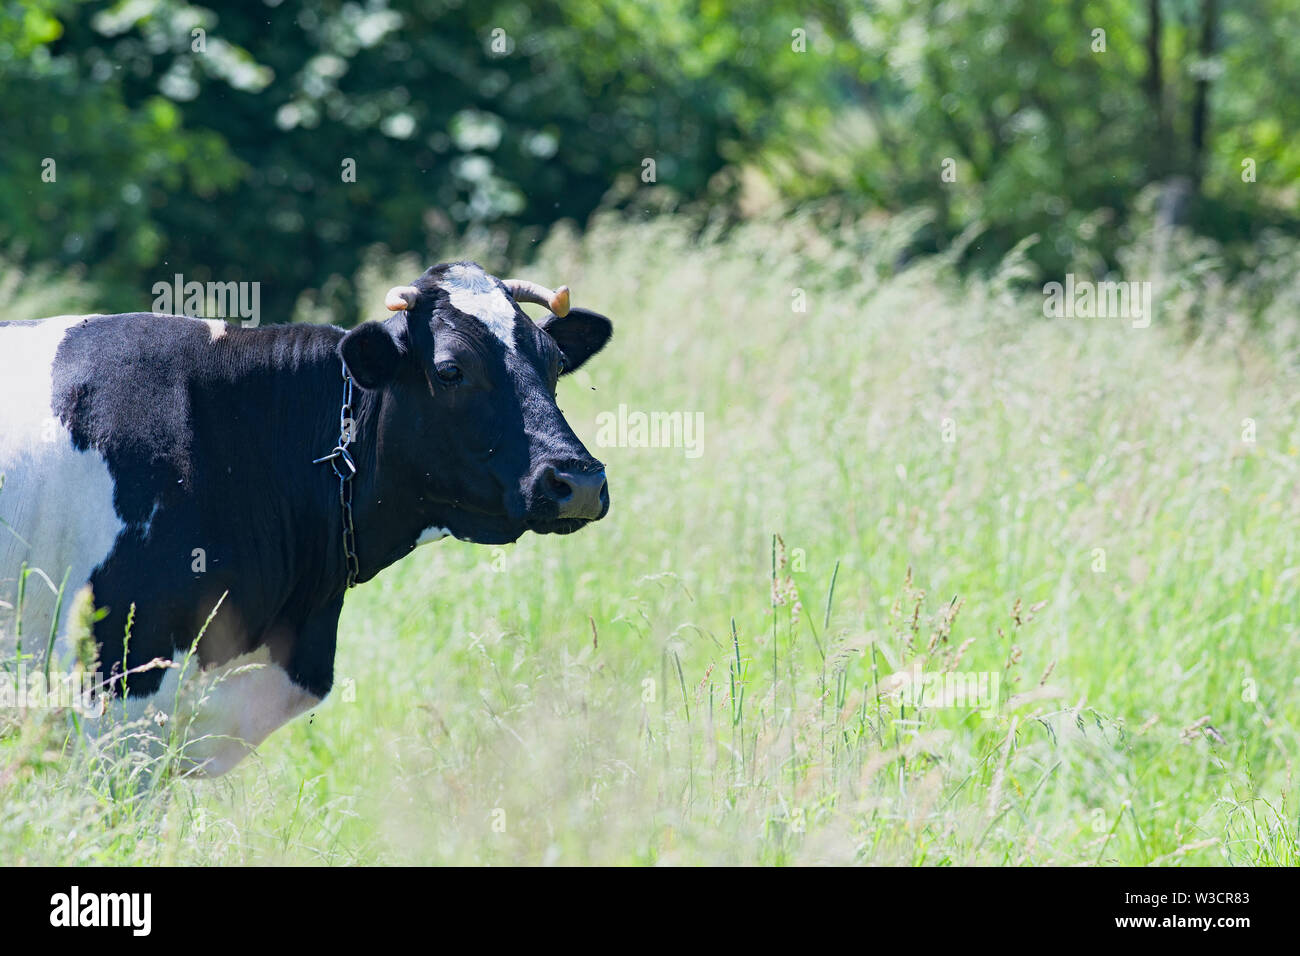 Es una vaca en un prado verde Foto de stock